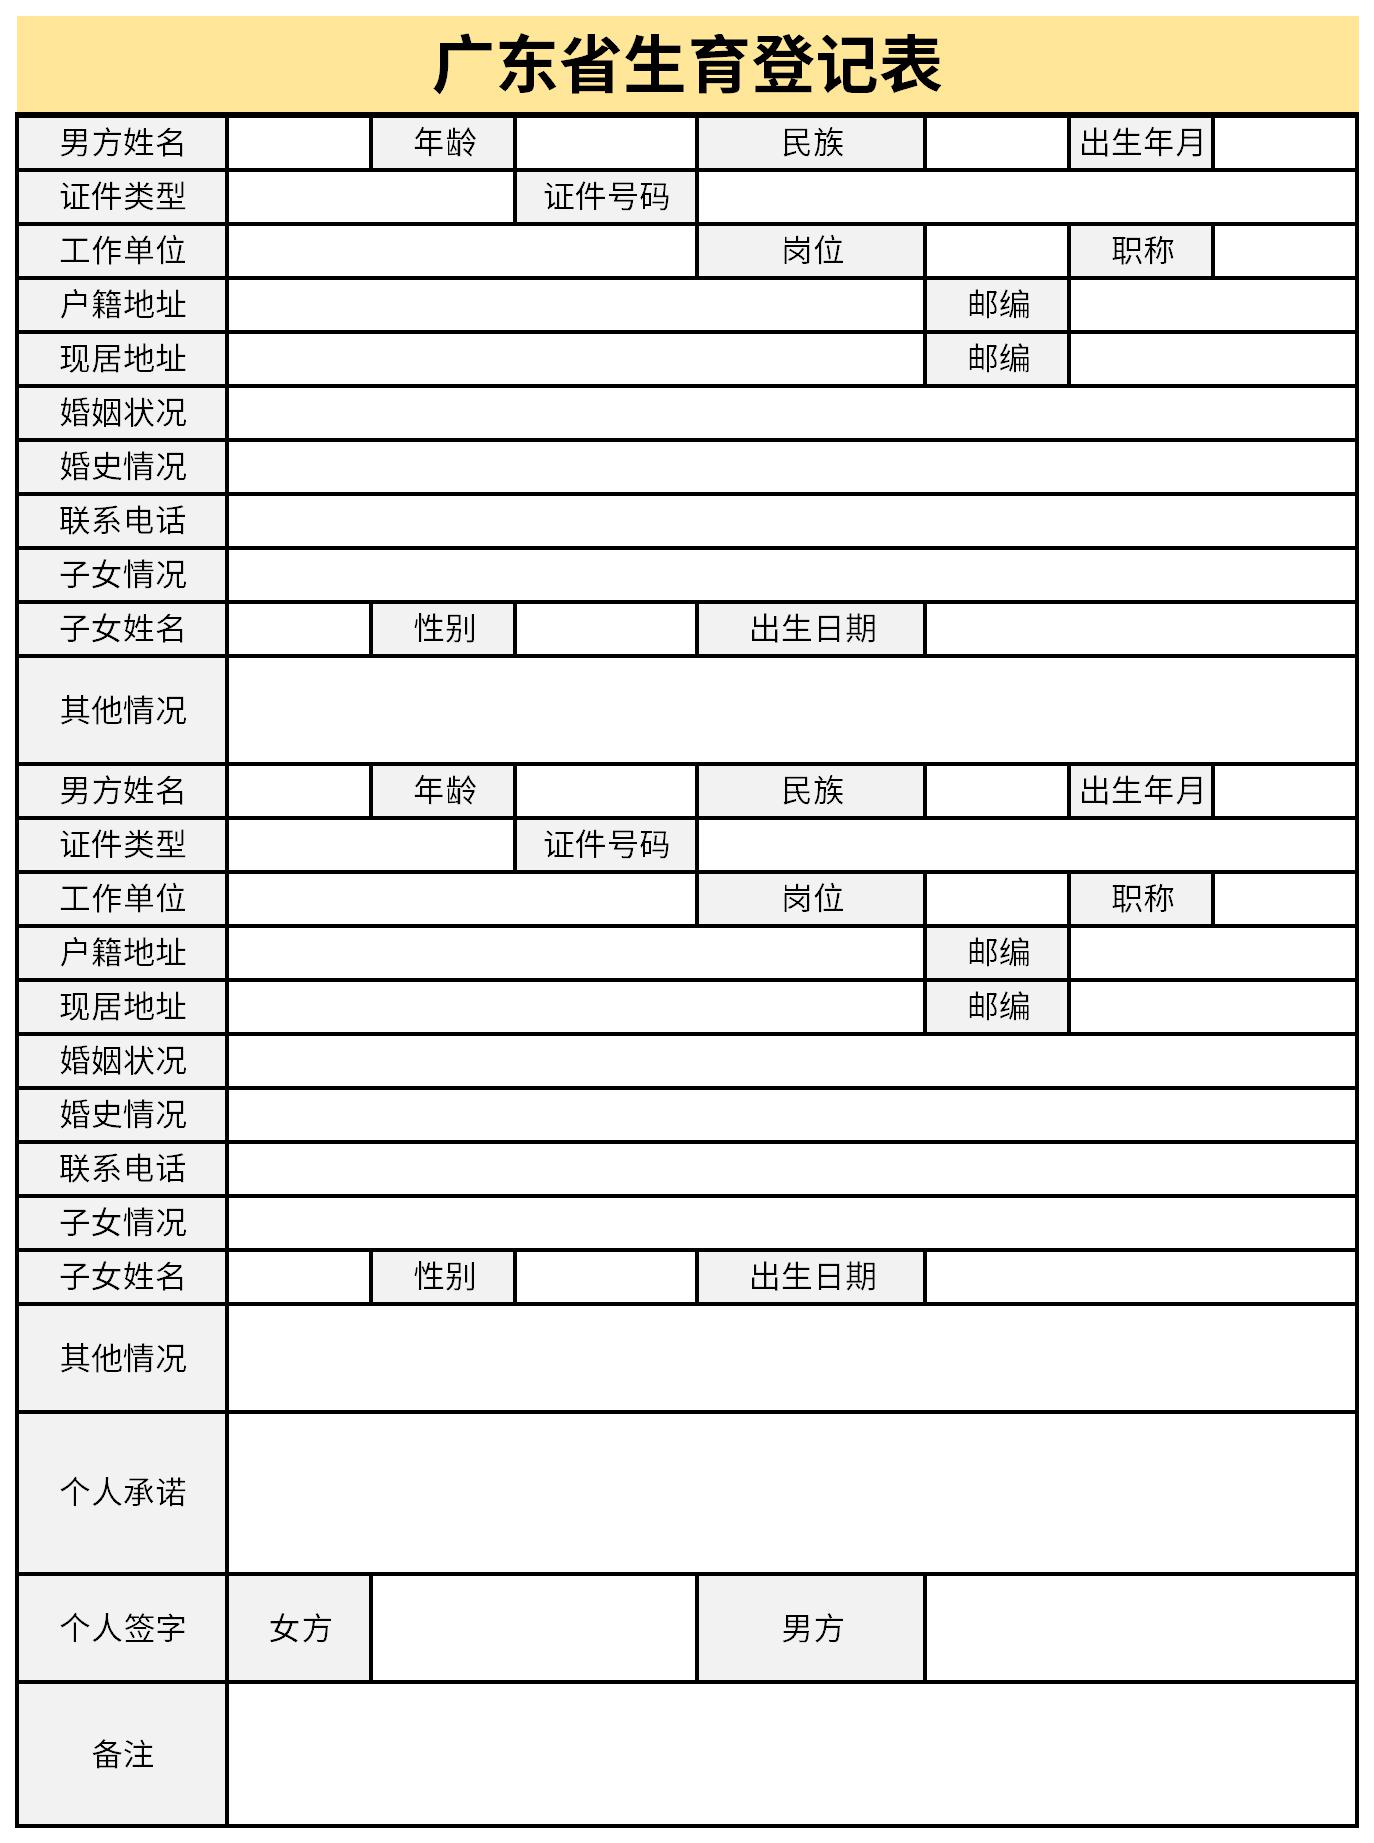 广东省生育登记表截图